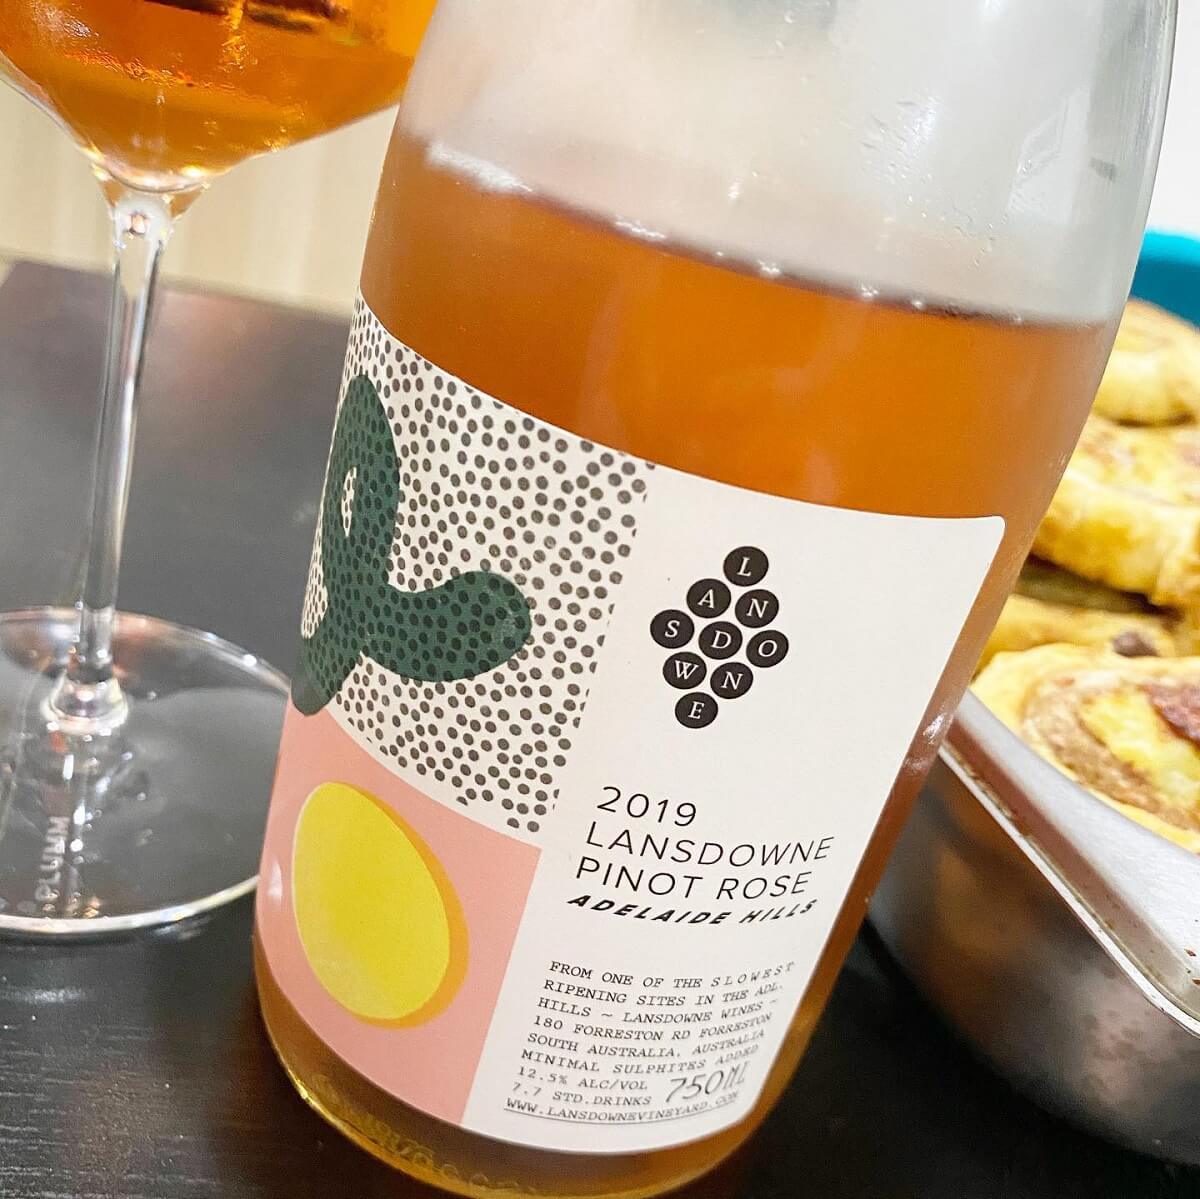 Lansdowne Wine 2019 Pinot Rose